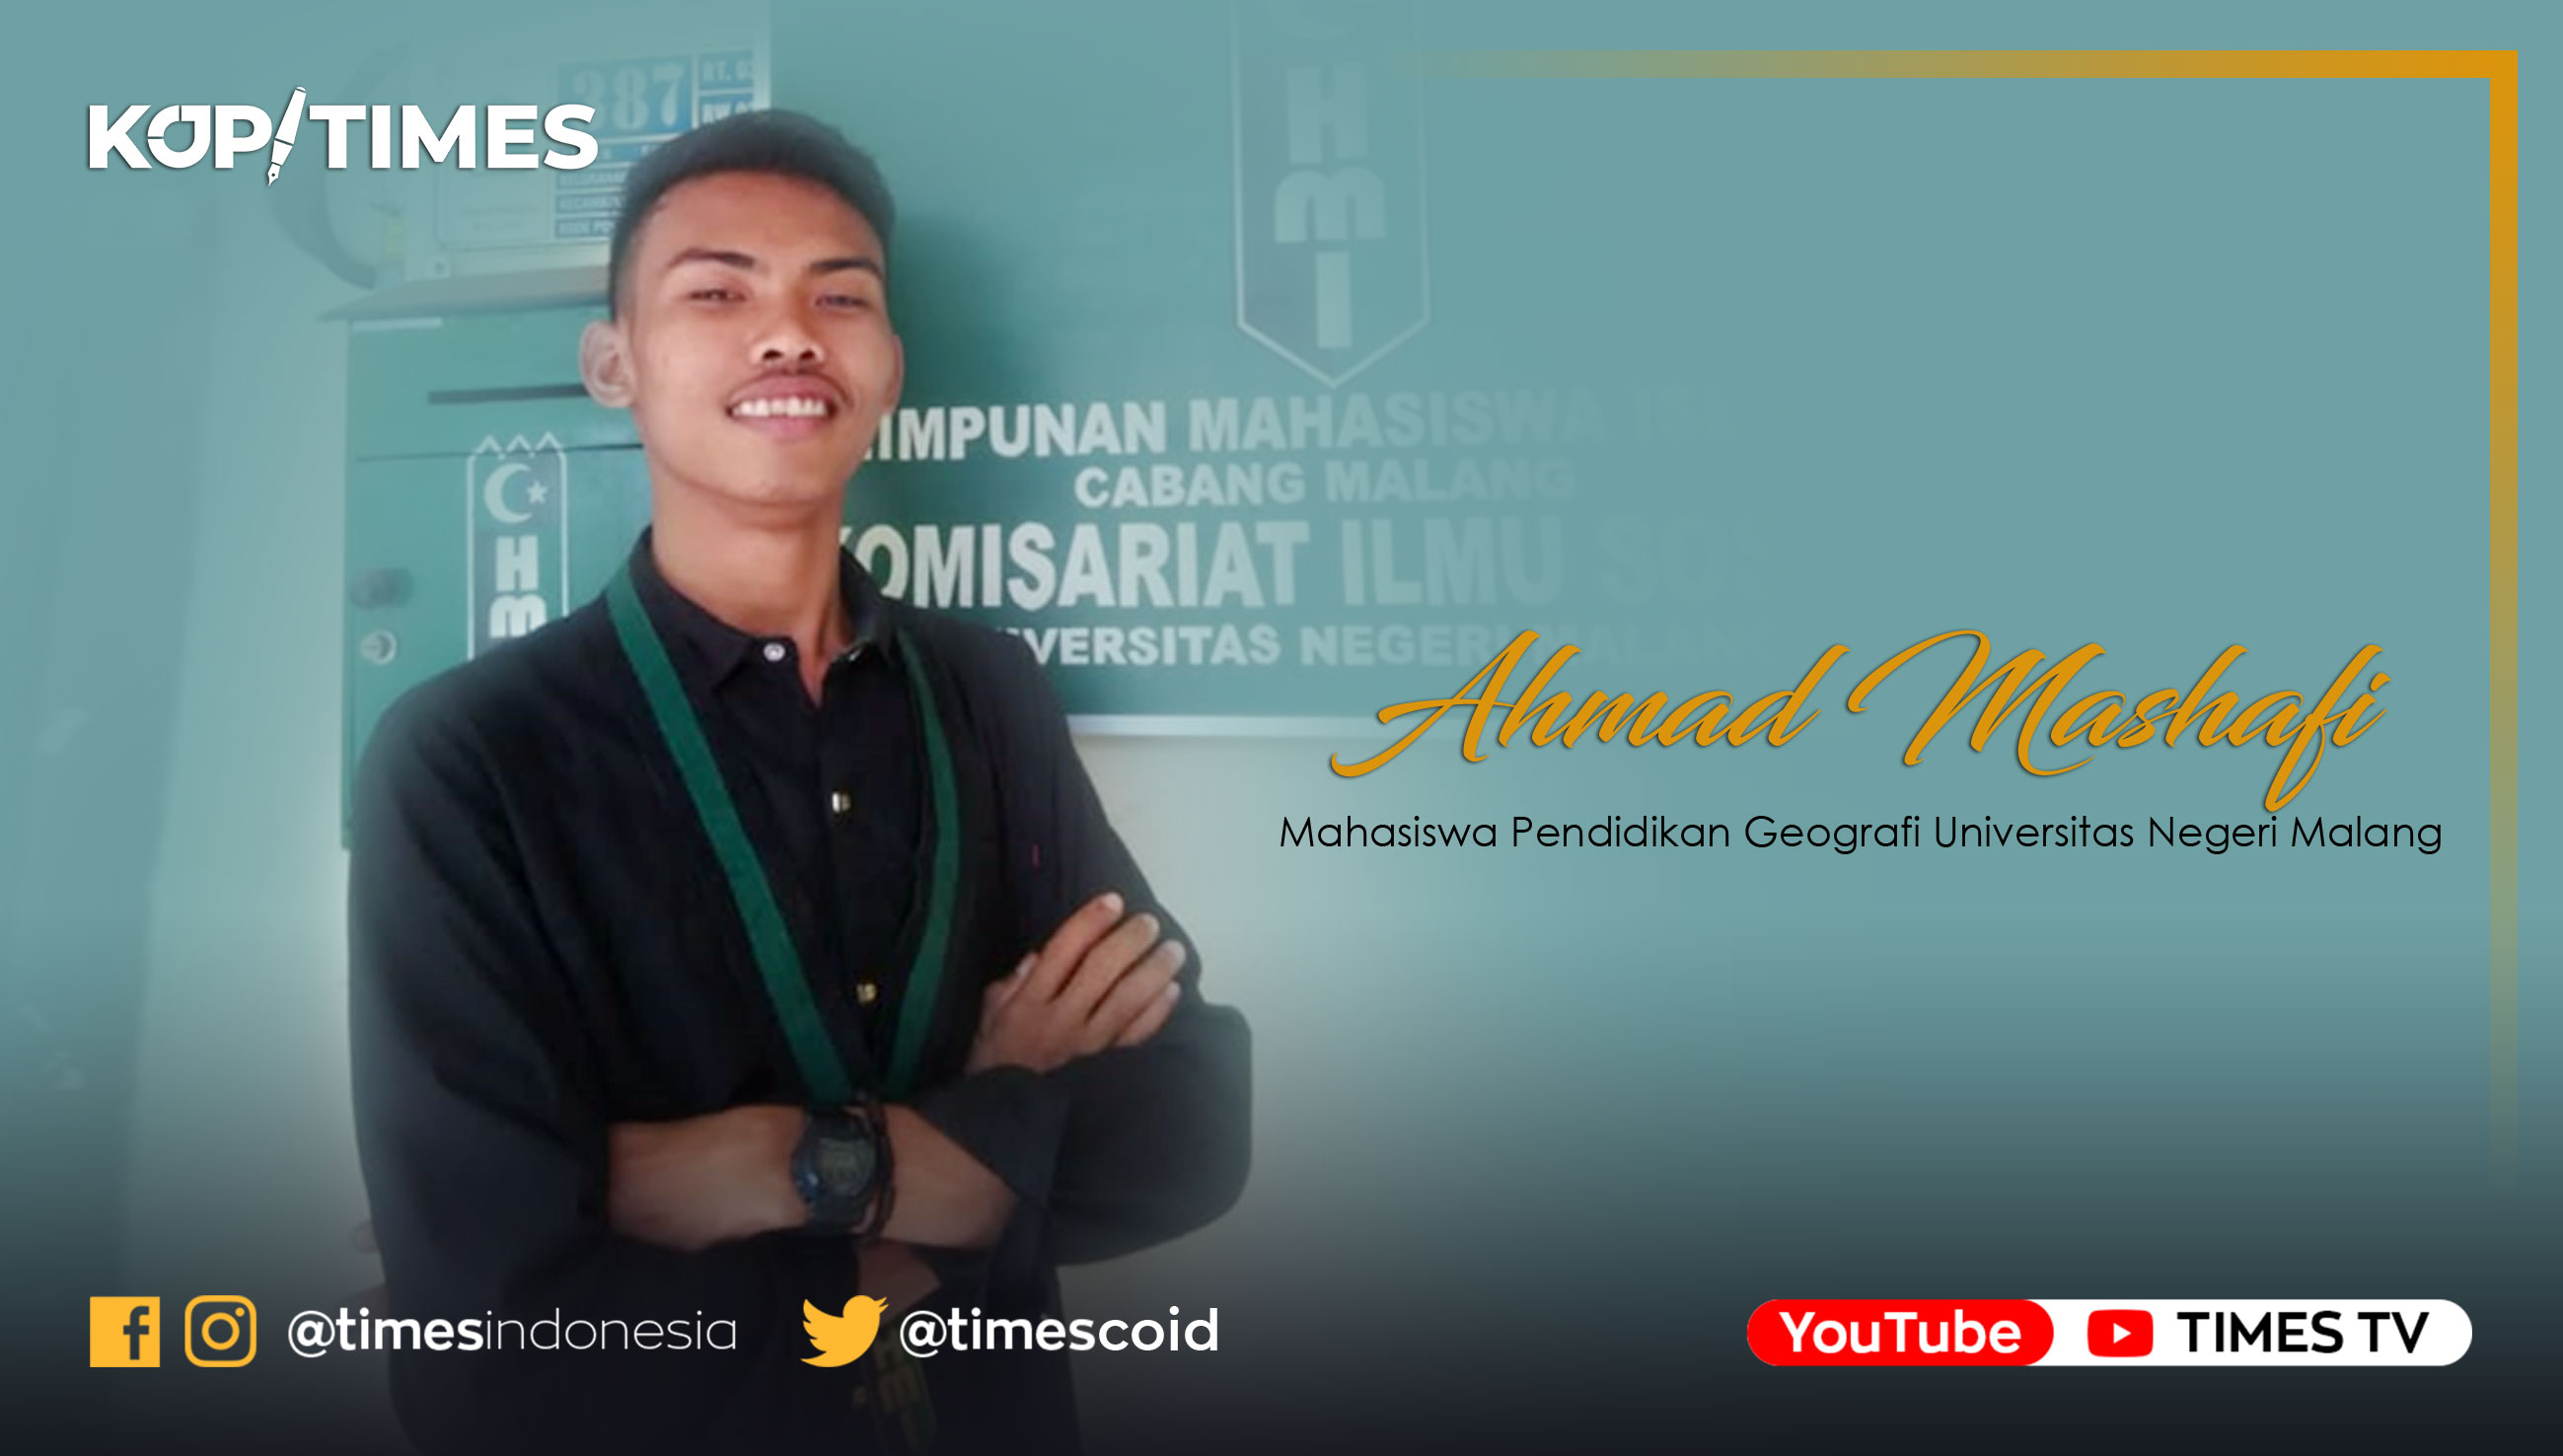 Ahmad Mashafi, Mahasiswa Pendidikan Geografi Universitas Negeri Malang.